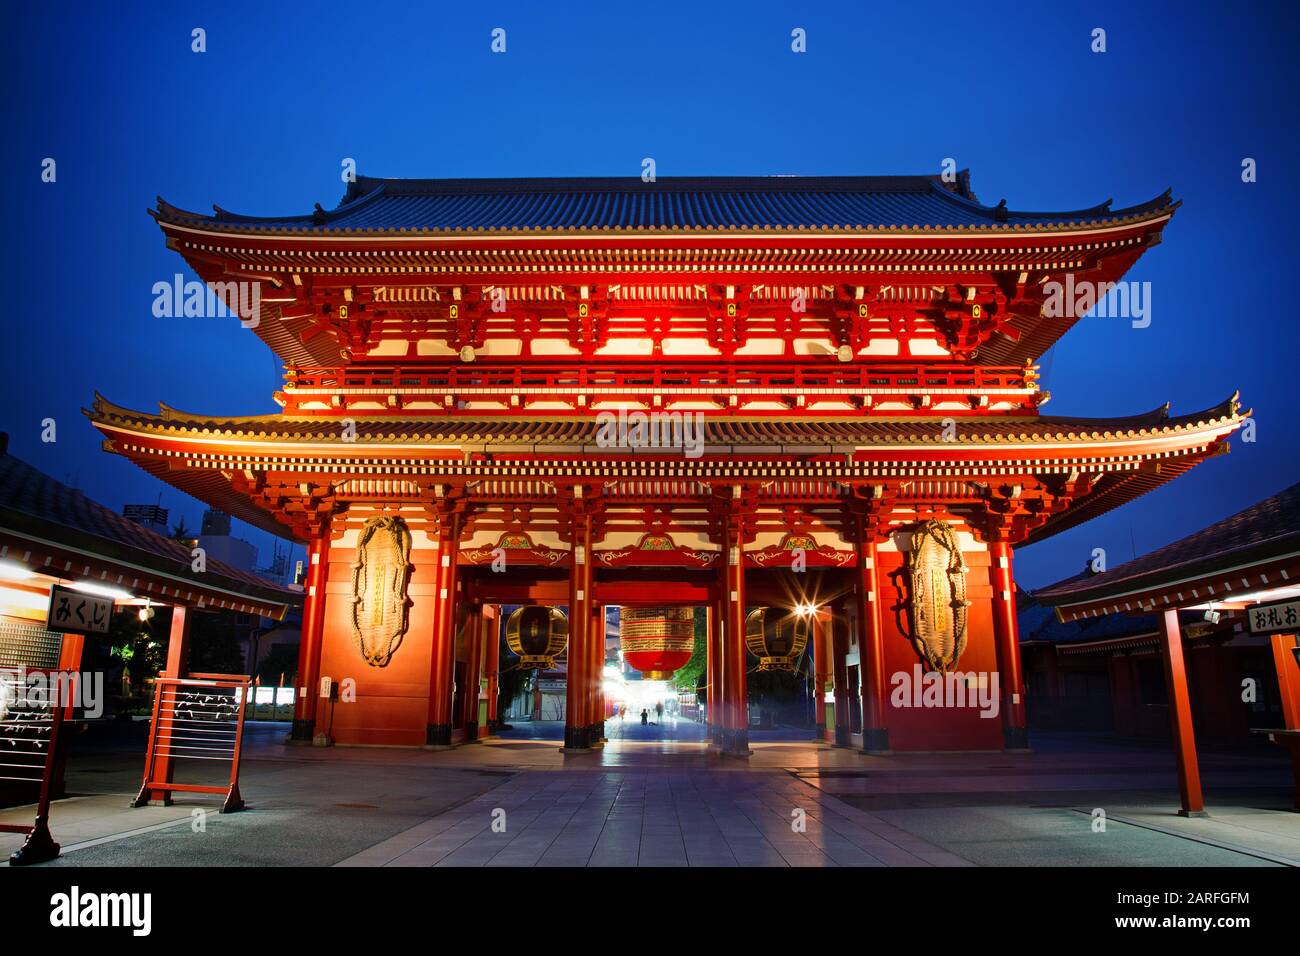 La porte Kaminarimon du Temple Sensoji, également connue sous le nom de Temple Asakusa Kannon, à Tokyo, au Japon. Banque D'Images